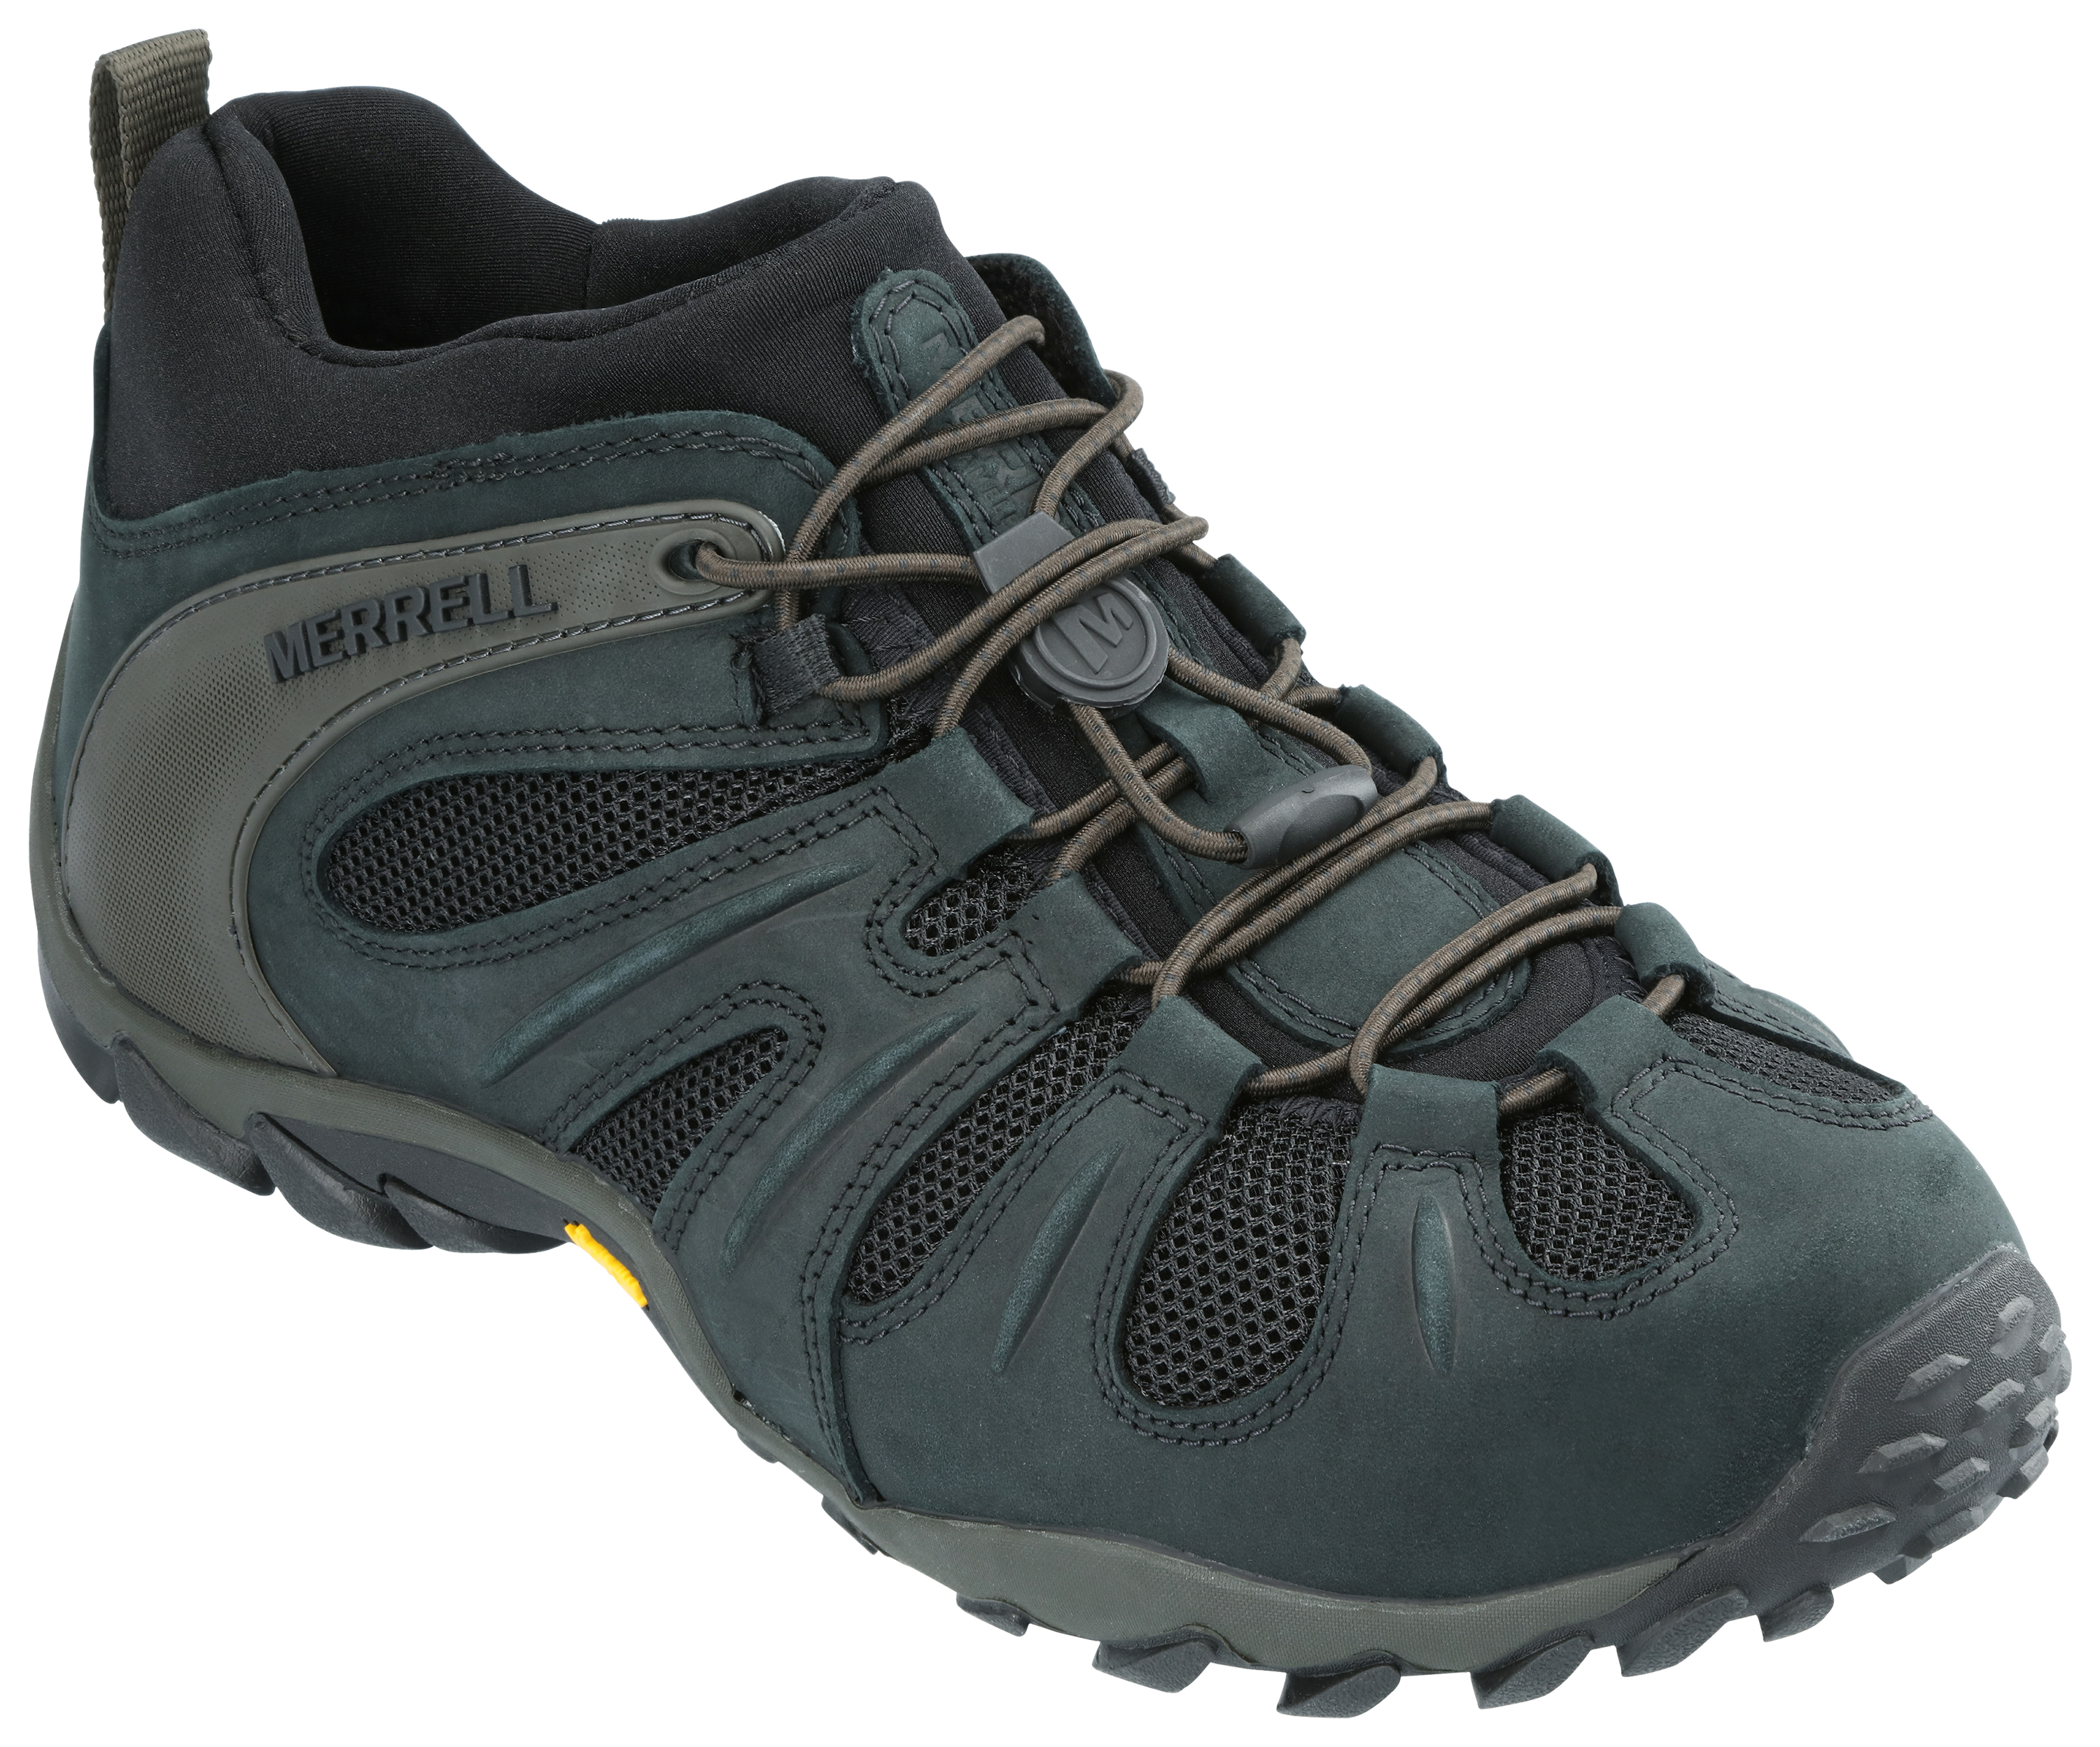 Merrell Chameleon 8 Stretch Hiking Boots for Men - Black - 8.5M